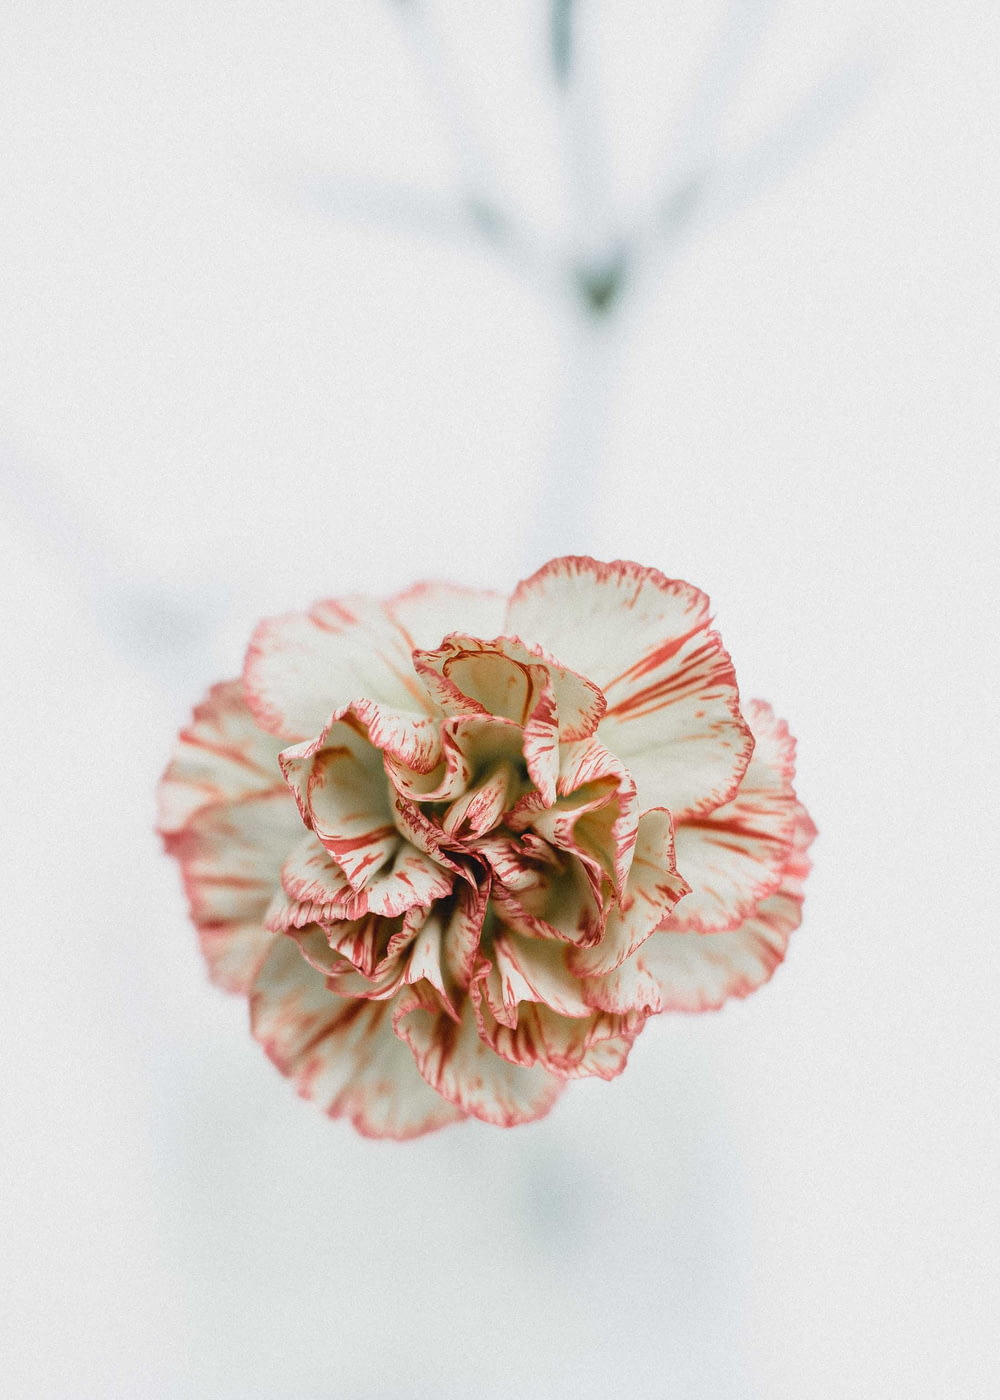 Fotografía macro de flores rojas y blancas